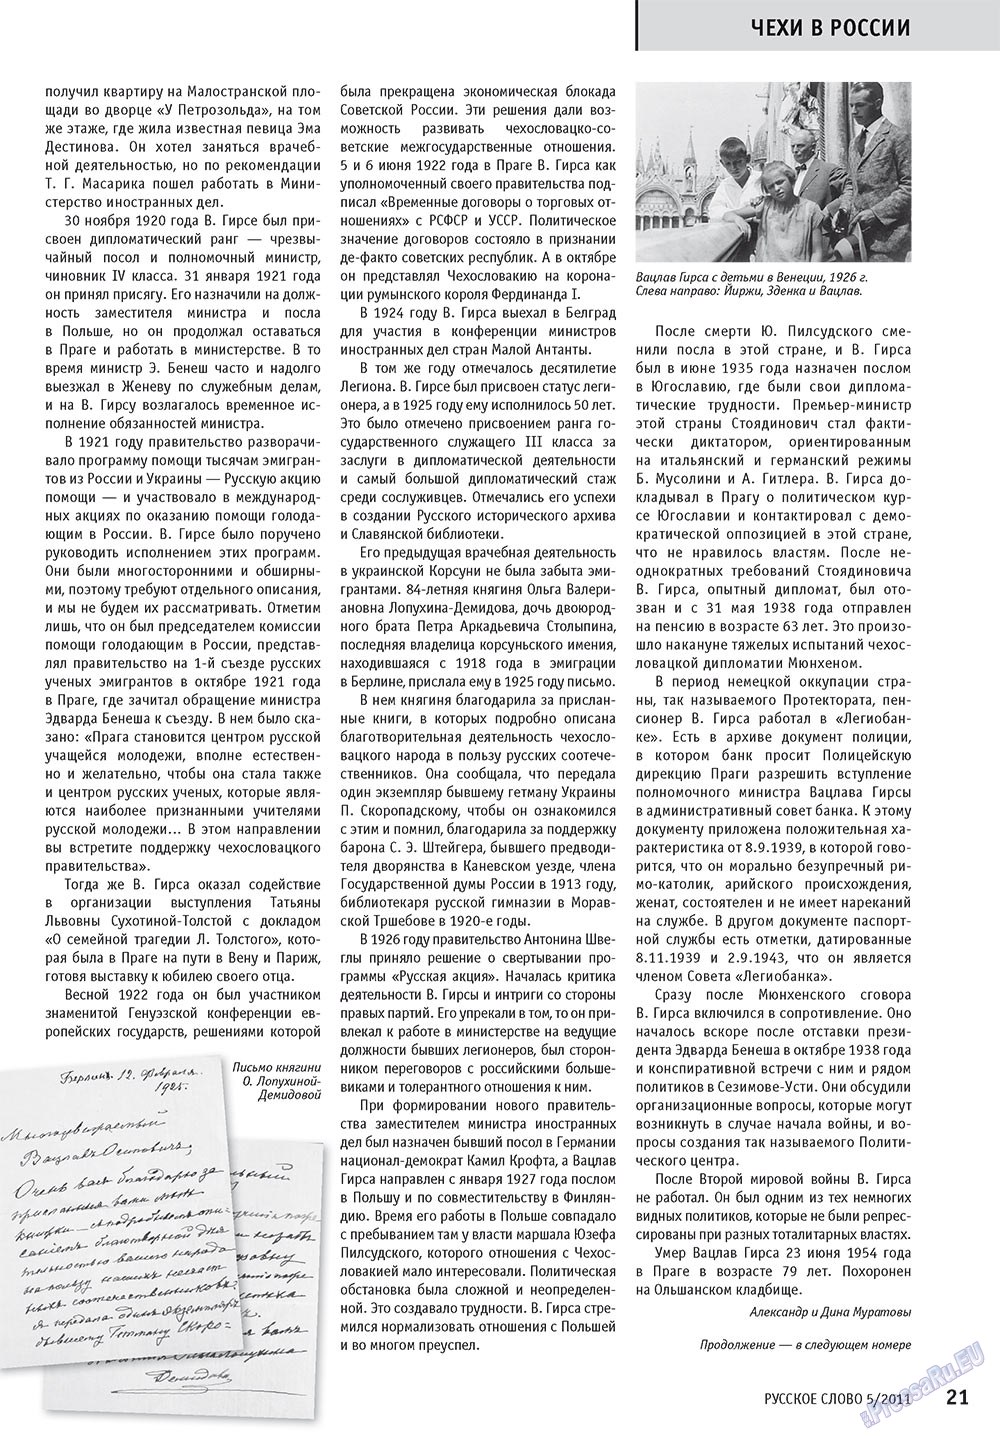 Русское слово (журнал). 2011 год, номер 5, стр. 23